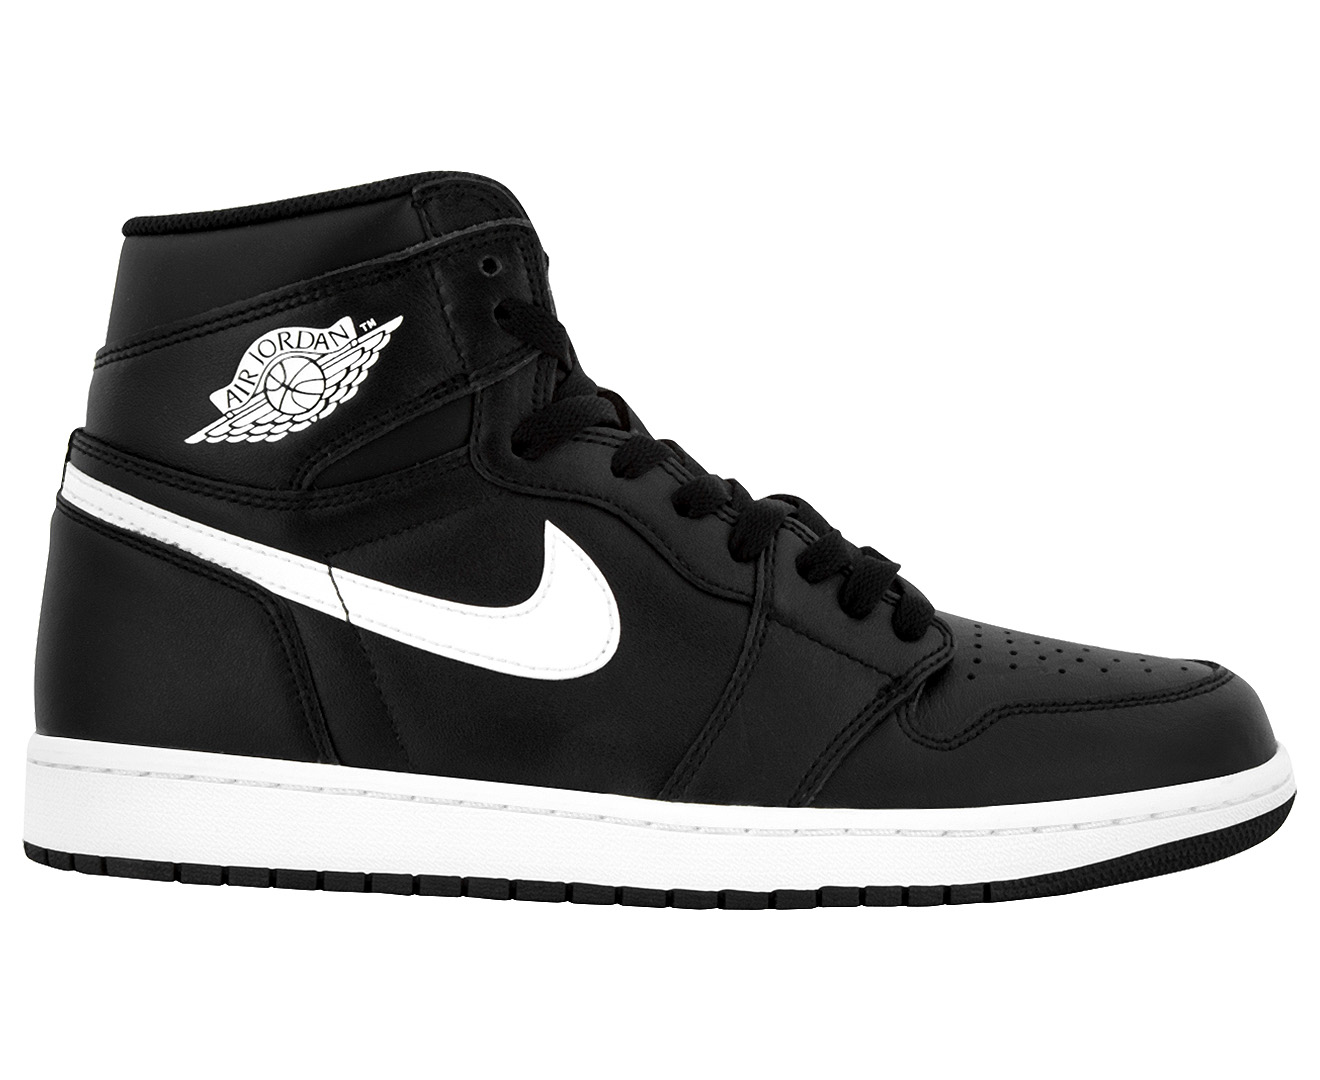 Nike Men's Air Jordan 1 Retro High OG Shoe - Black/White-Black | Catch ...